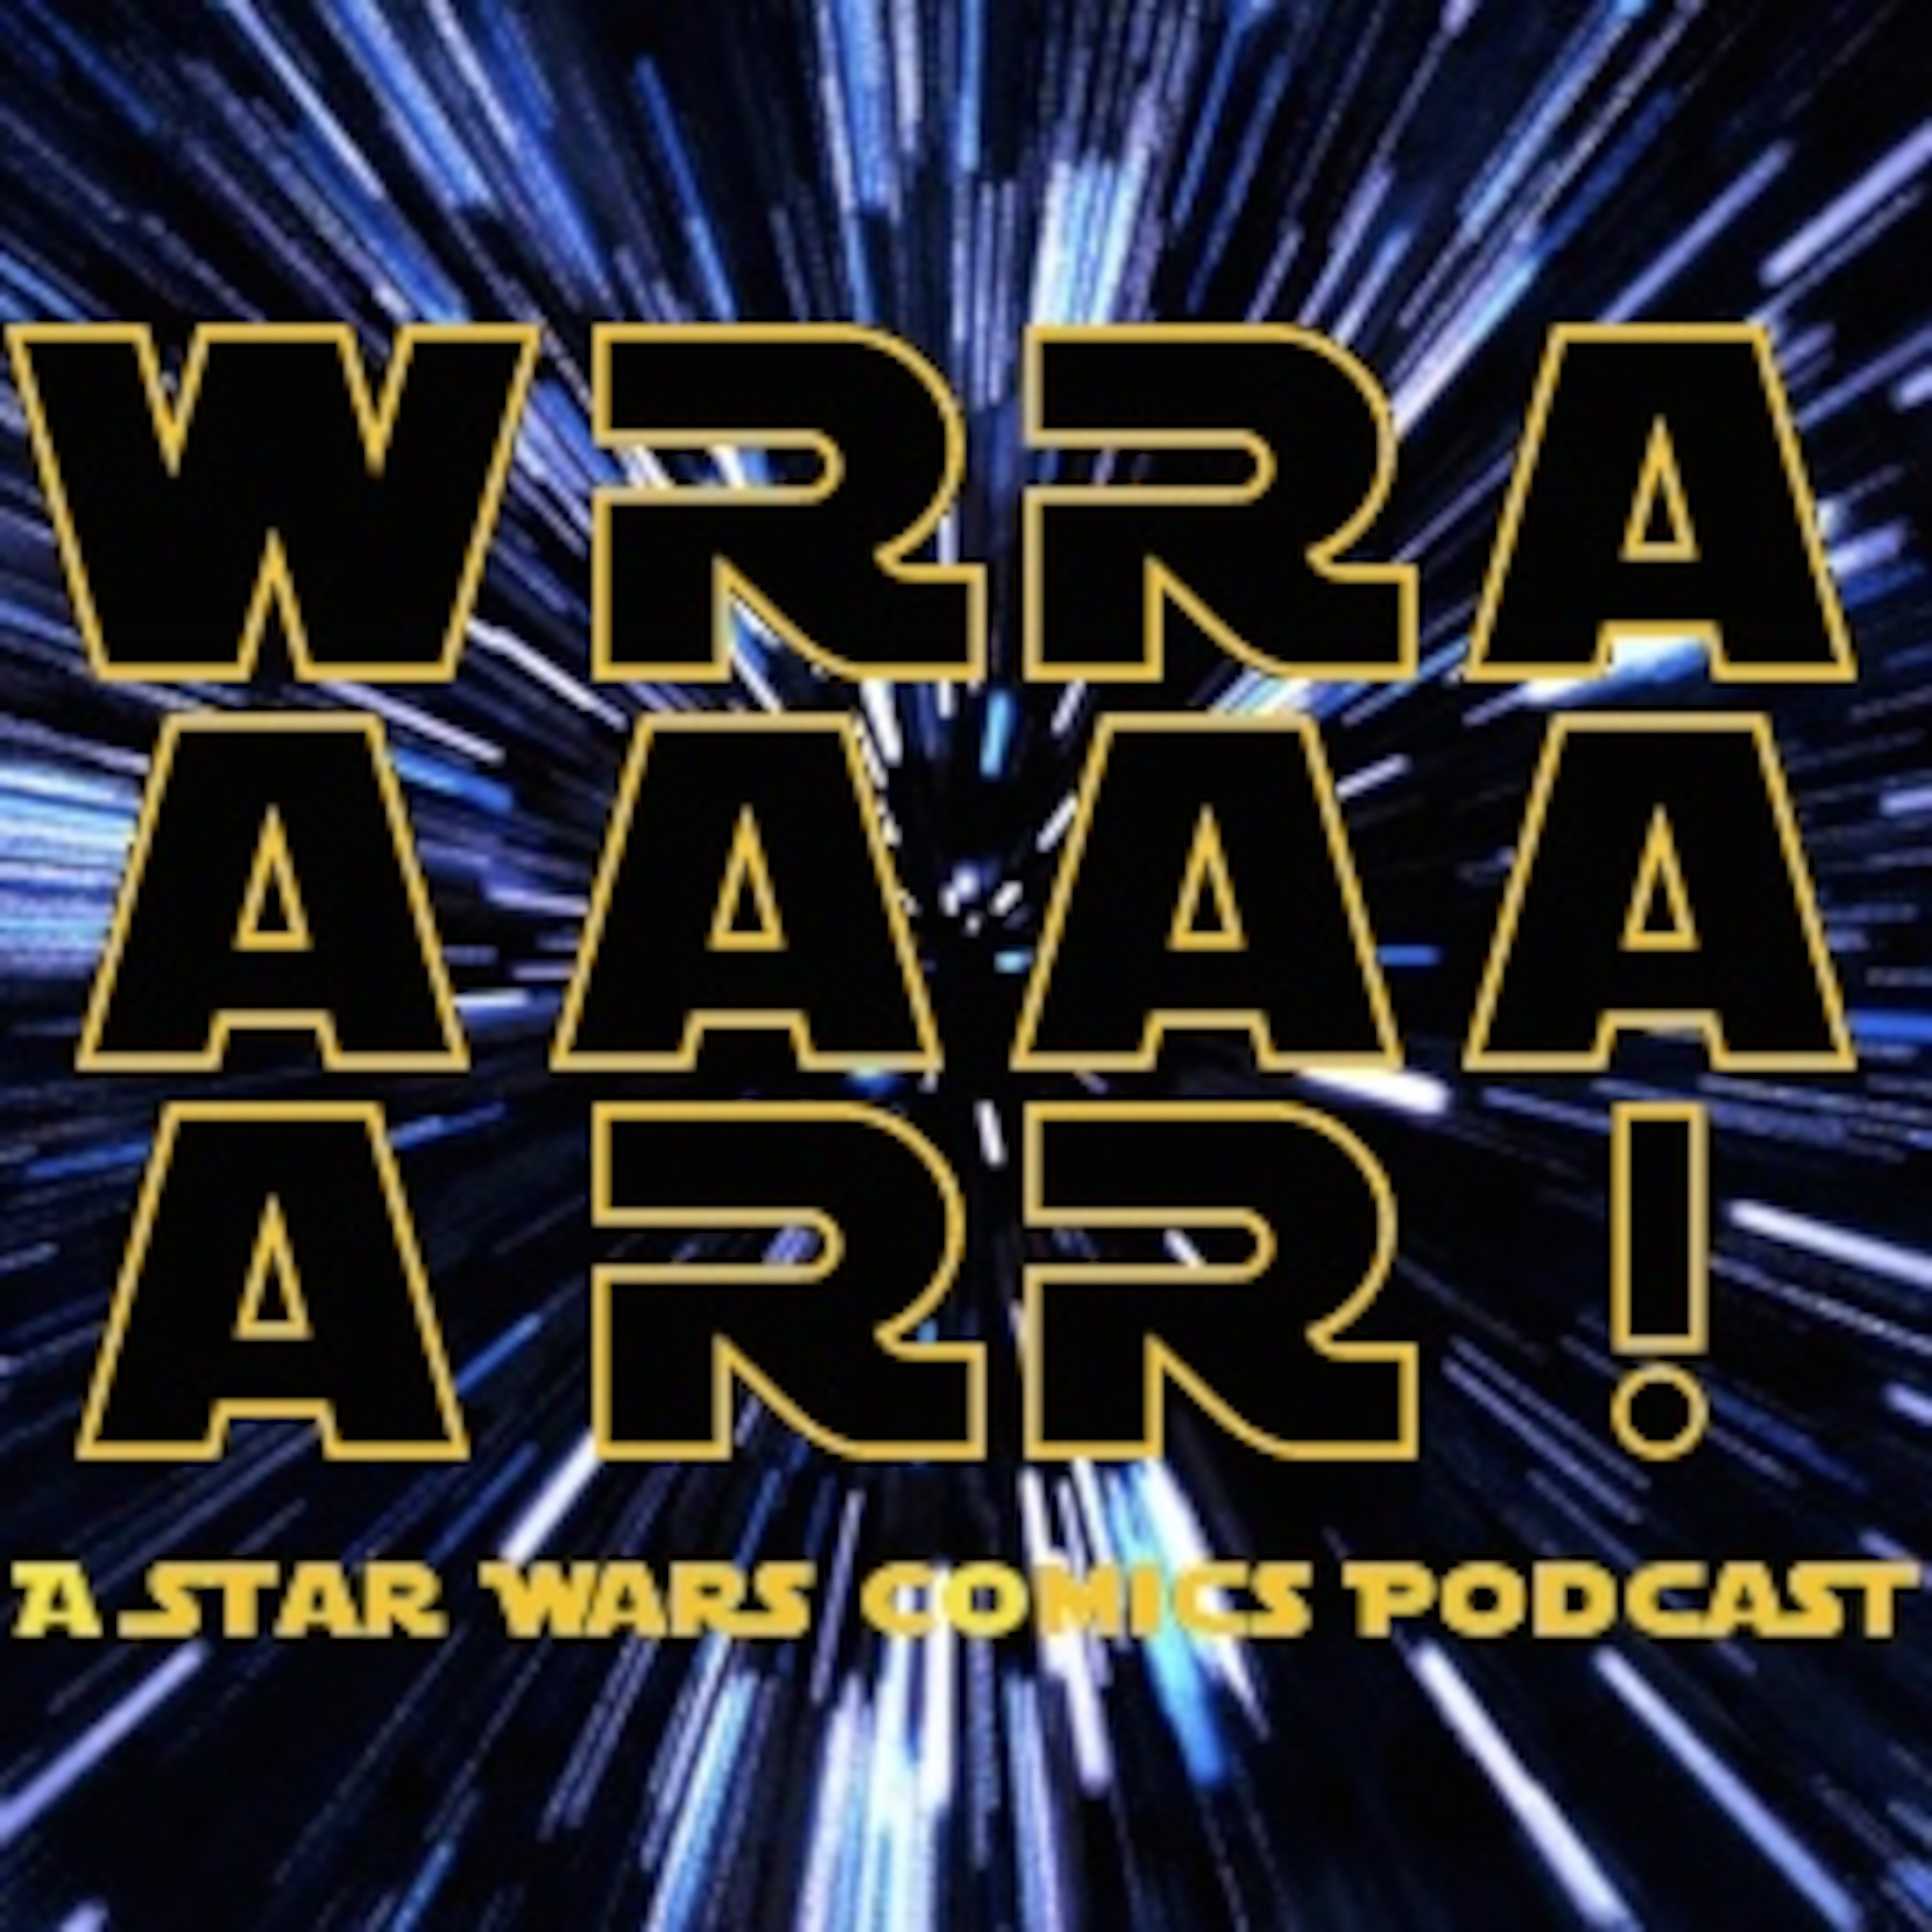 WRRAAAAAARR!: a Star Wars Comics Podcast